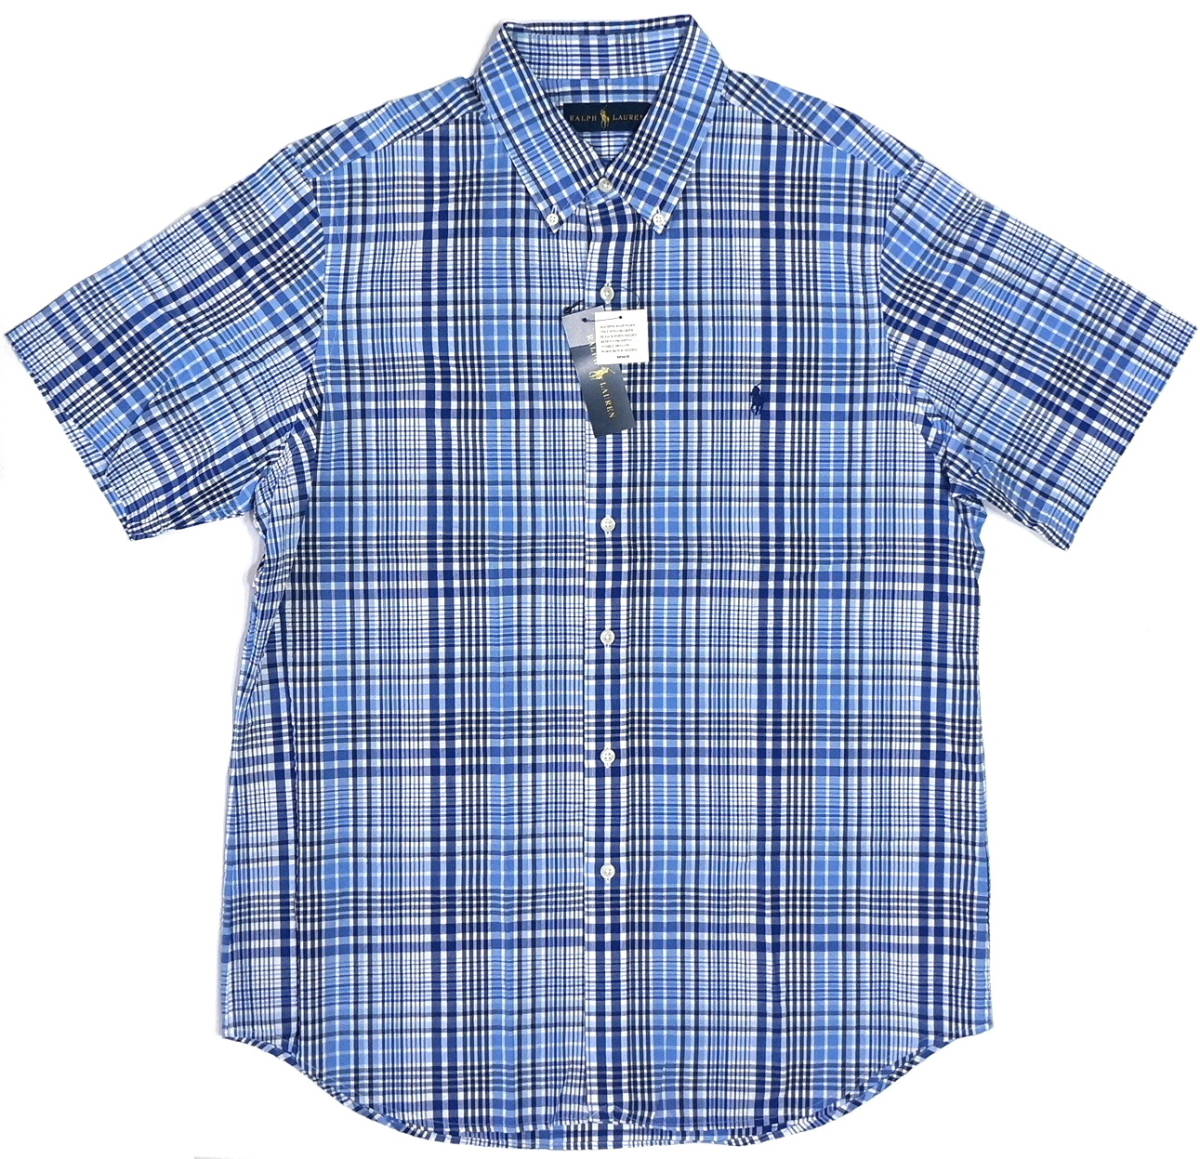 【新品】ラルフローレン ■ シアサッカーチェックシャツ ■ メンズ XL / US L ■ ブルー POLO RALPH LAUREN 正規品 _画像4